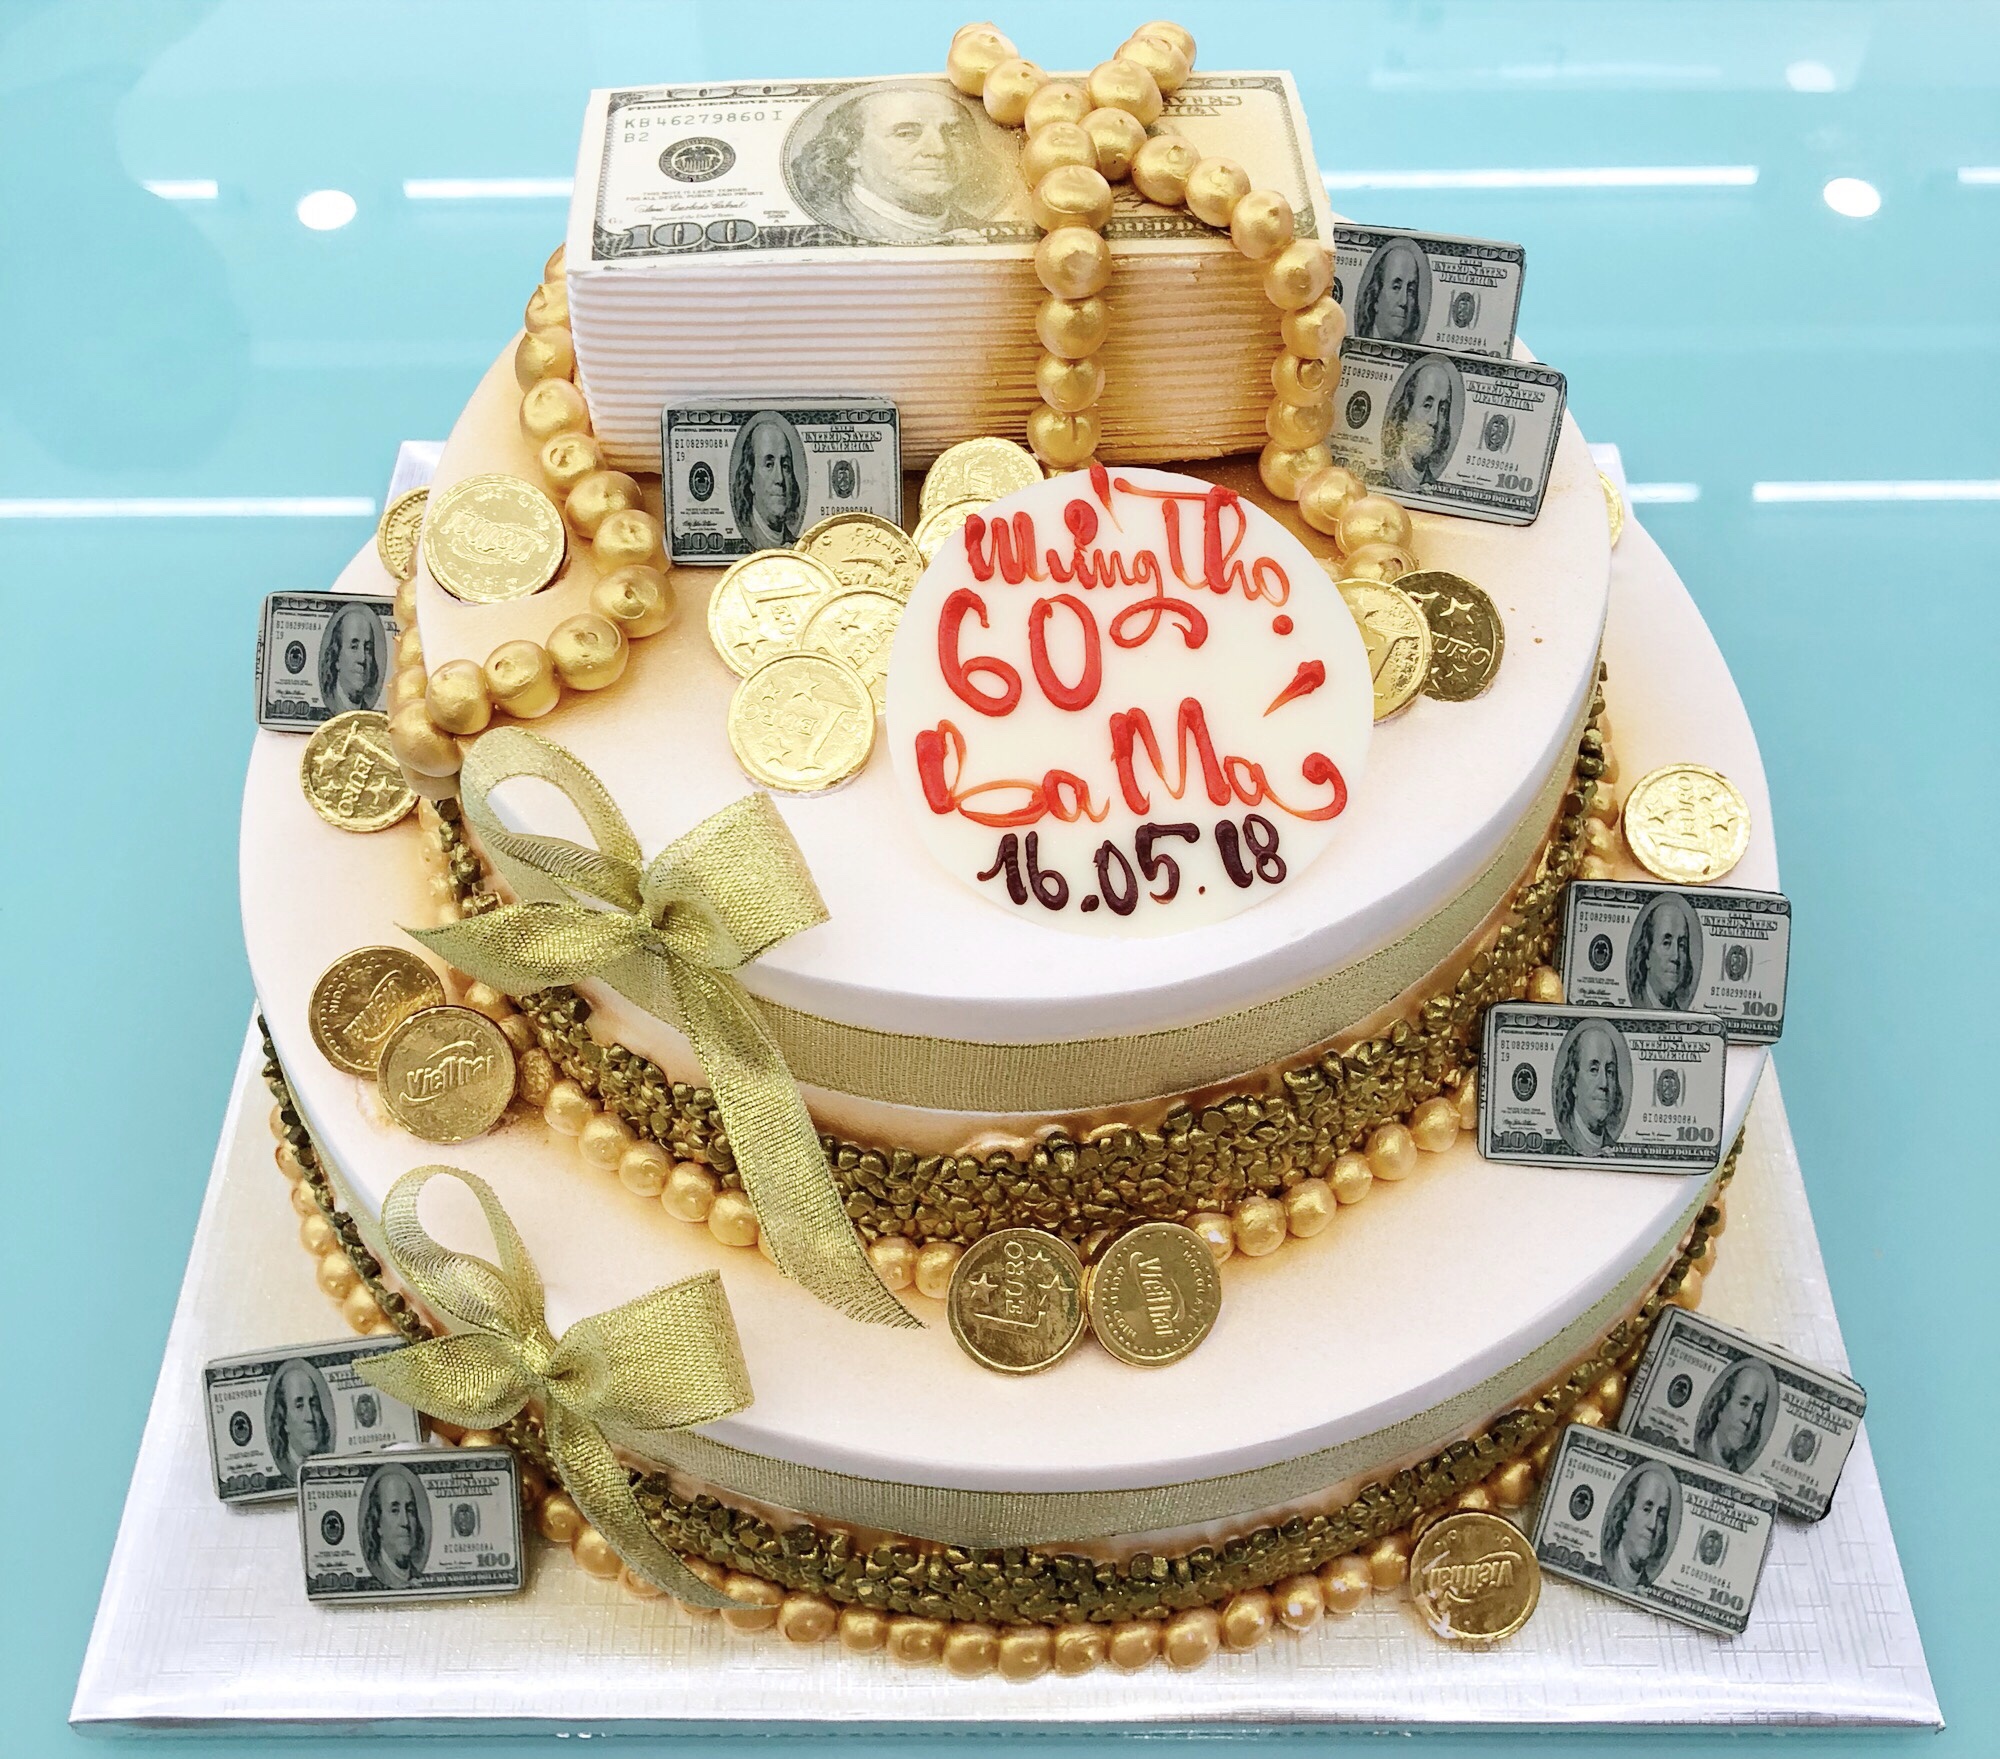 Những mẫu bánh 2 tầng siêu xinh... - Bánh sinh nhật Ngọc Linh | Facebook